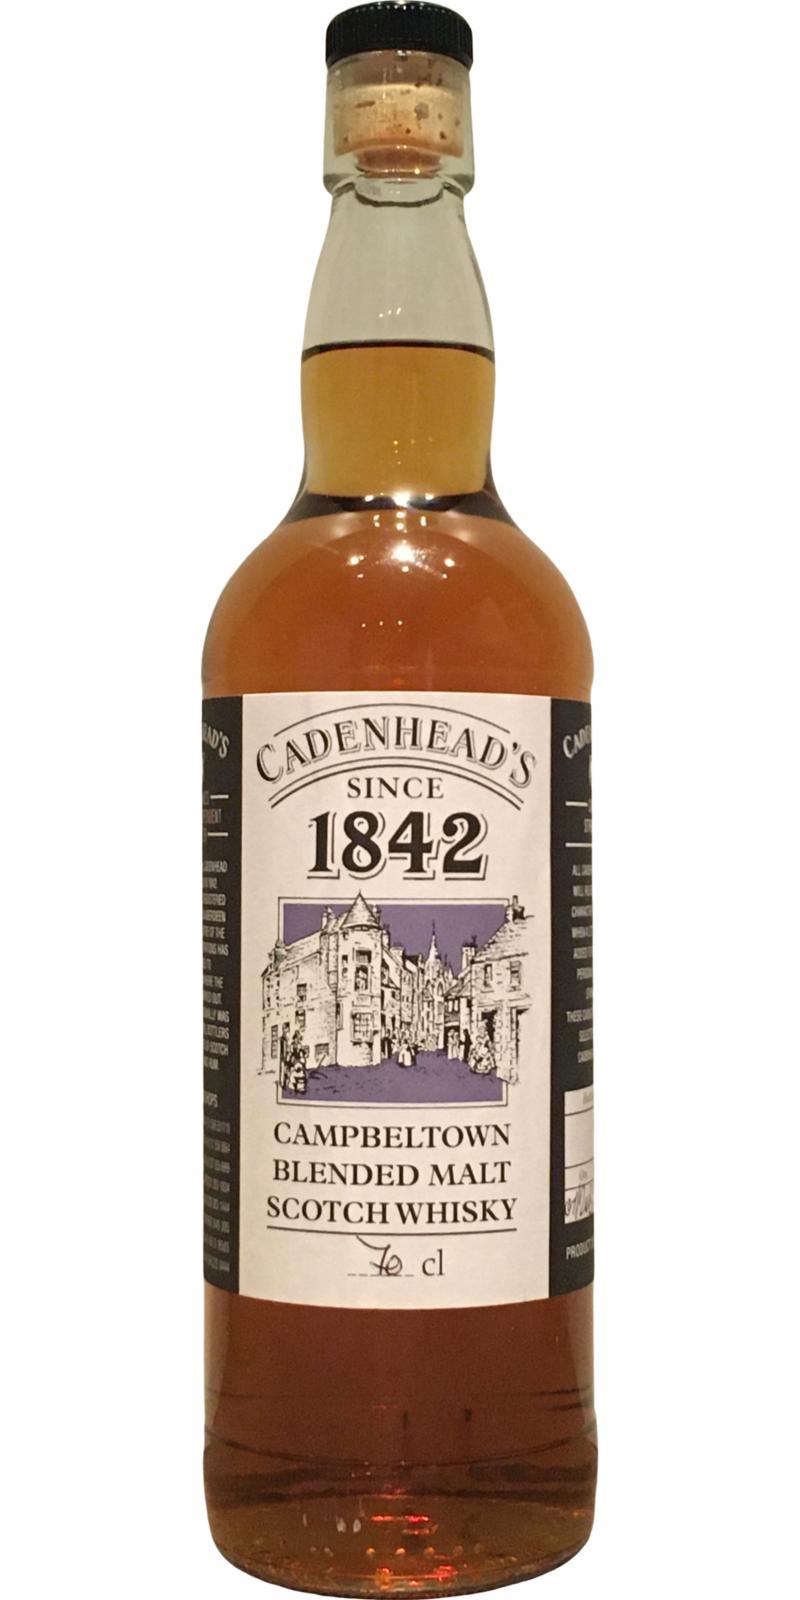 Campbeltown Blended Malt Cadenhead's 1842 CA Hand-bottled from the cask 58.6% 700ml